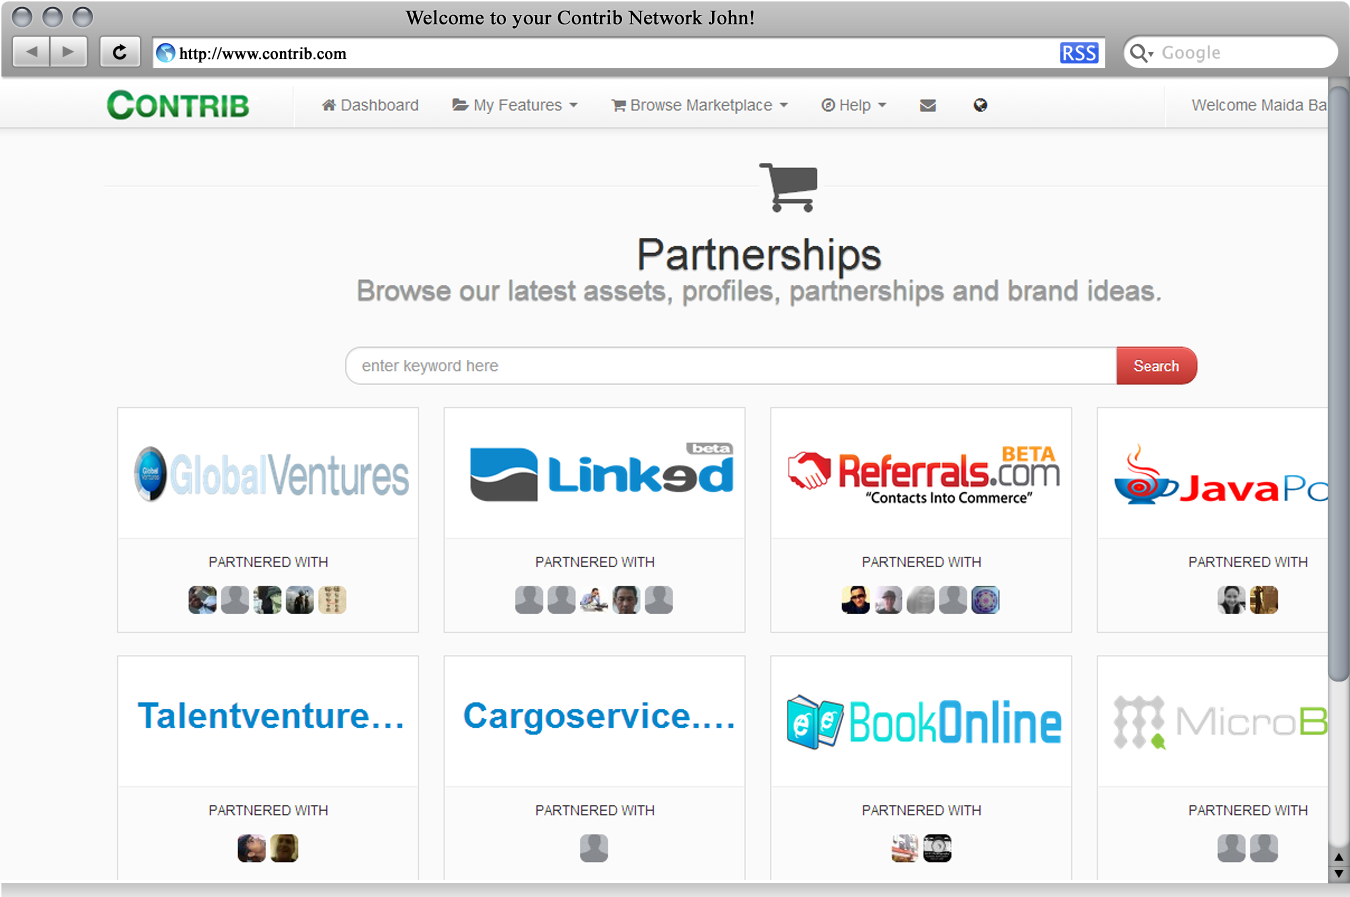 Partnership marketplace